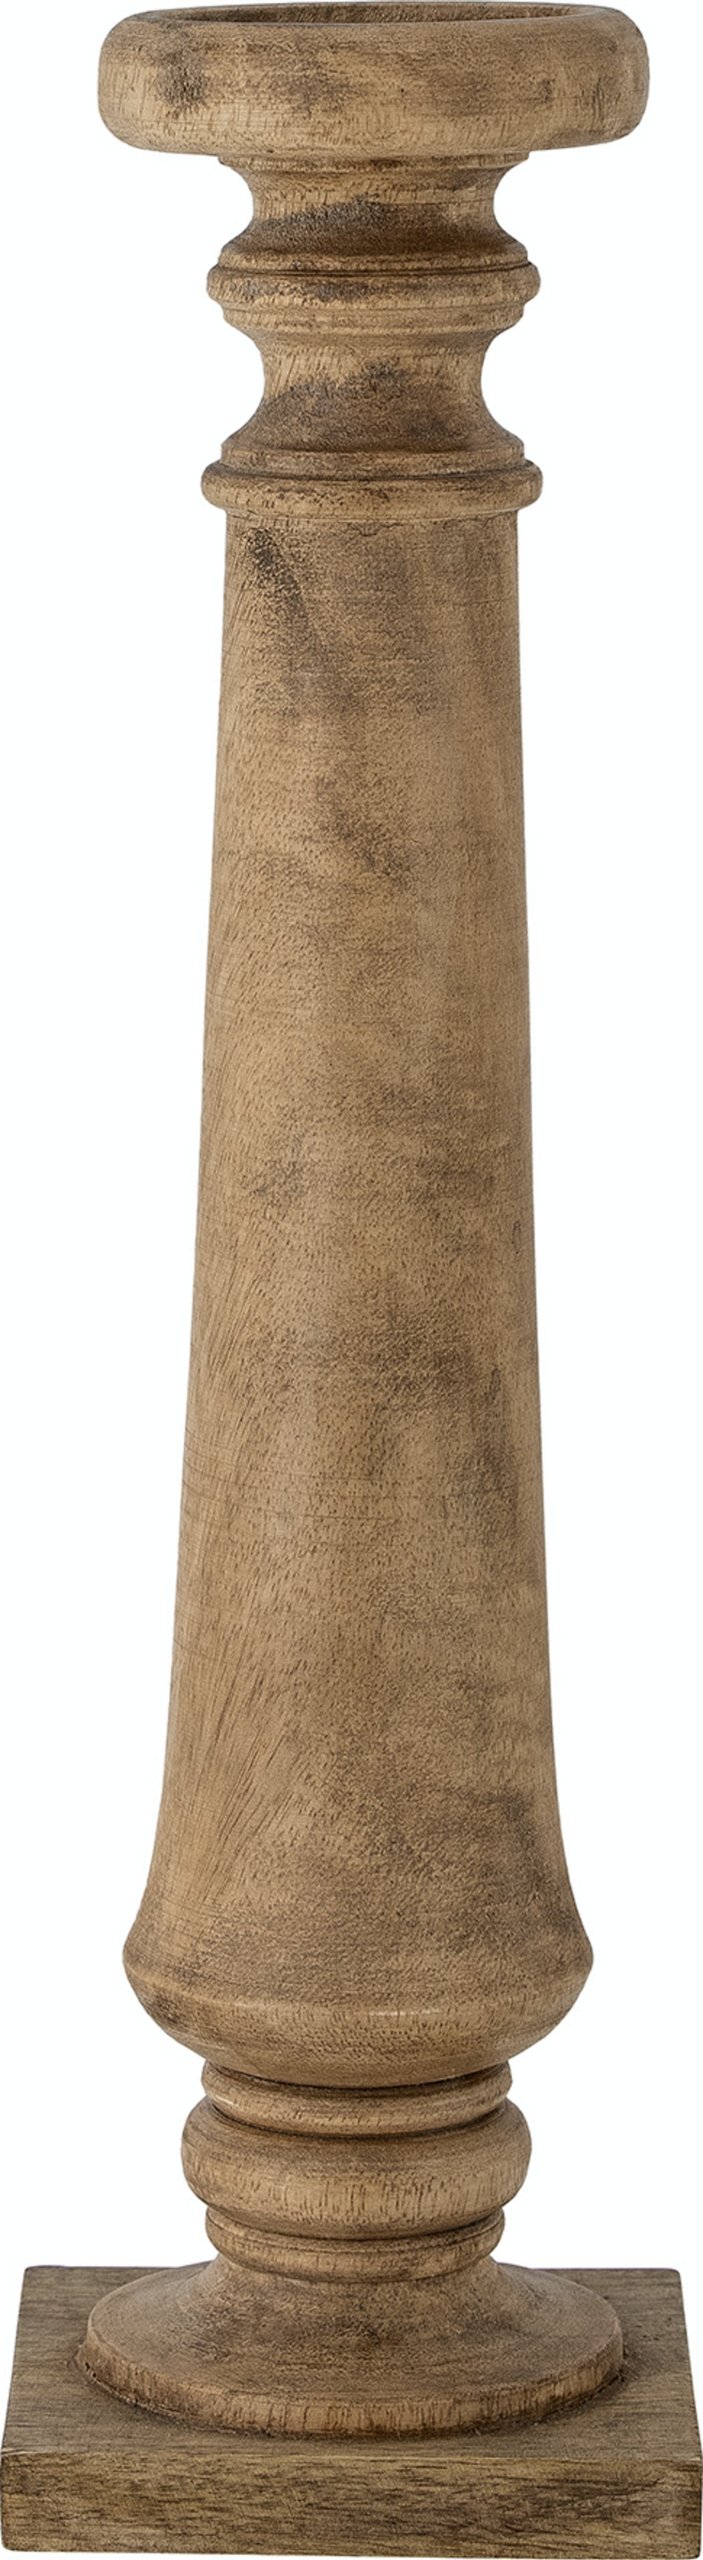 5: Noore, Piedestal, Mangotræ by Bloomingville (H: 46 cm. x B: 13 cm. x L: 13 cm., Natur)